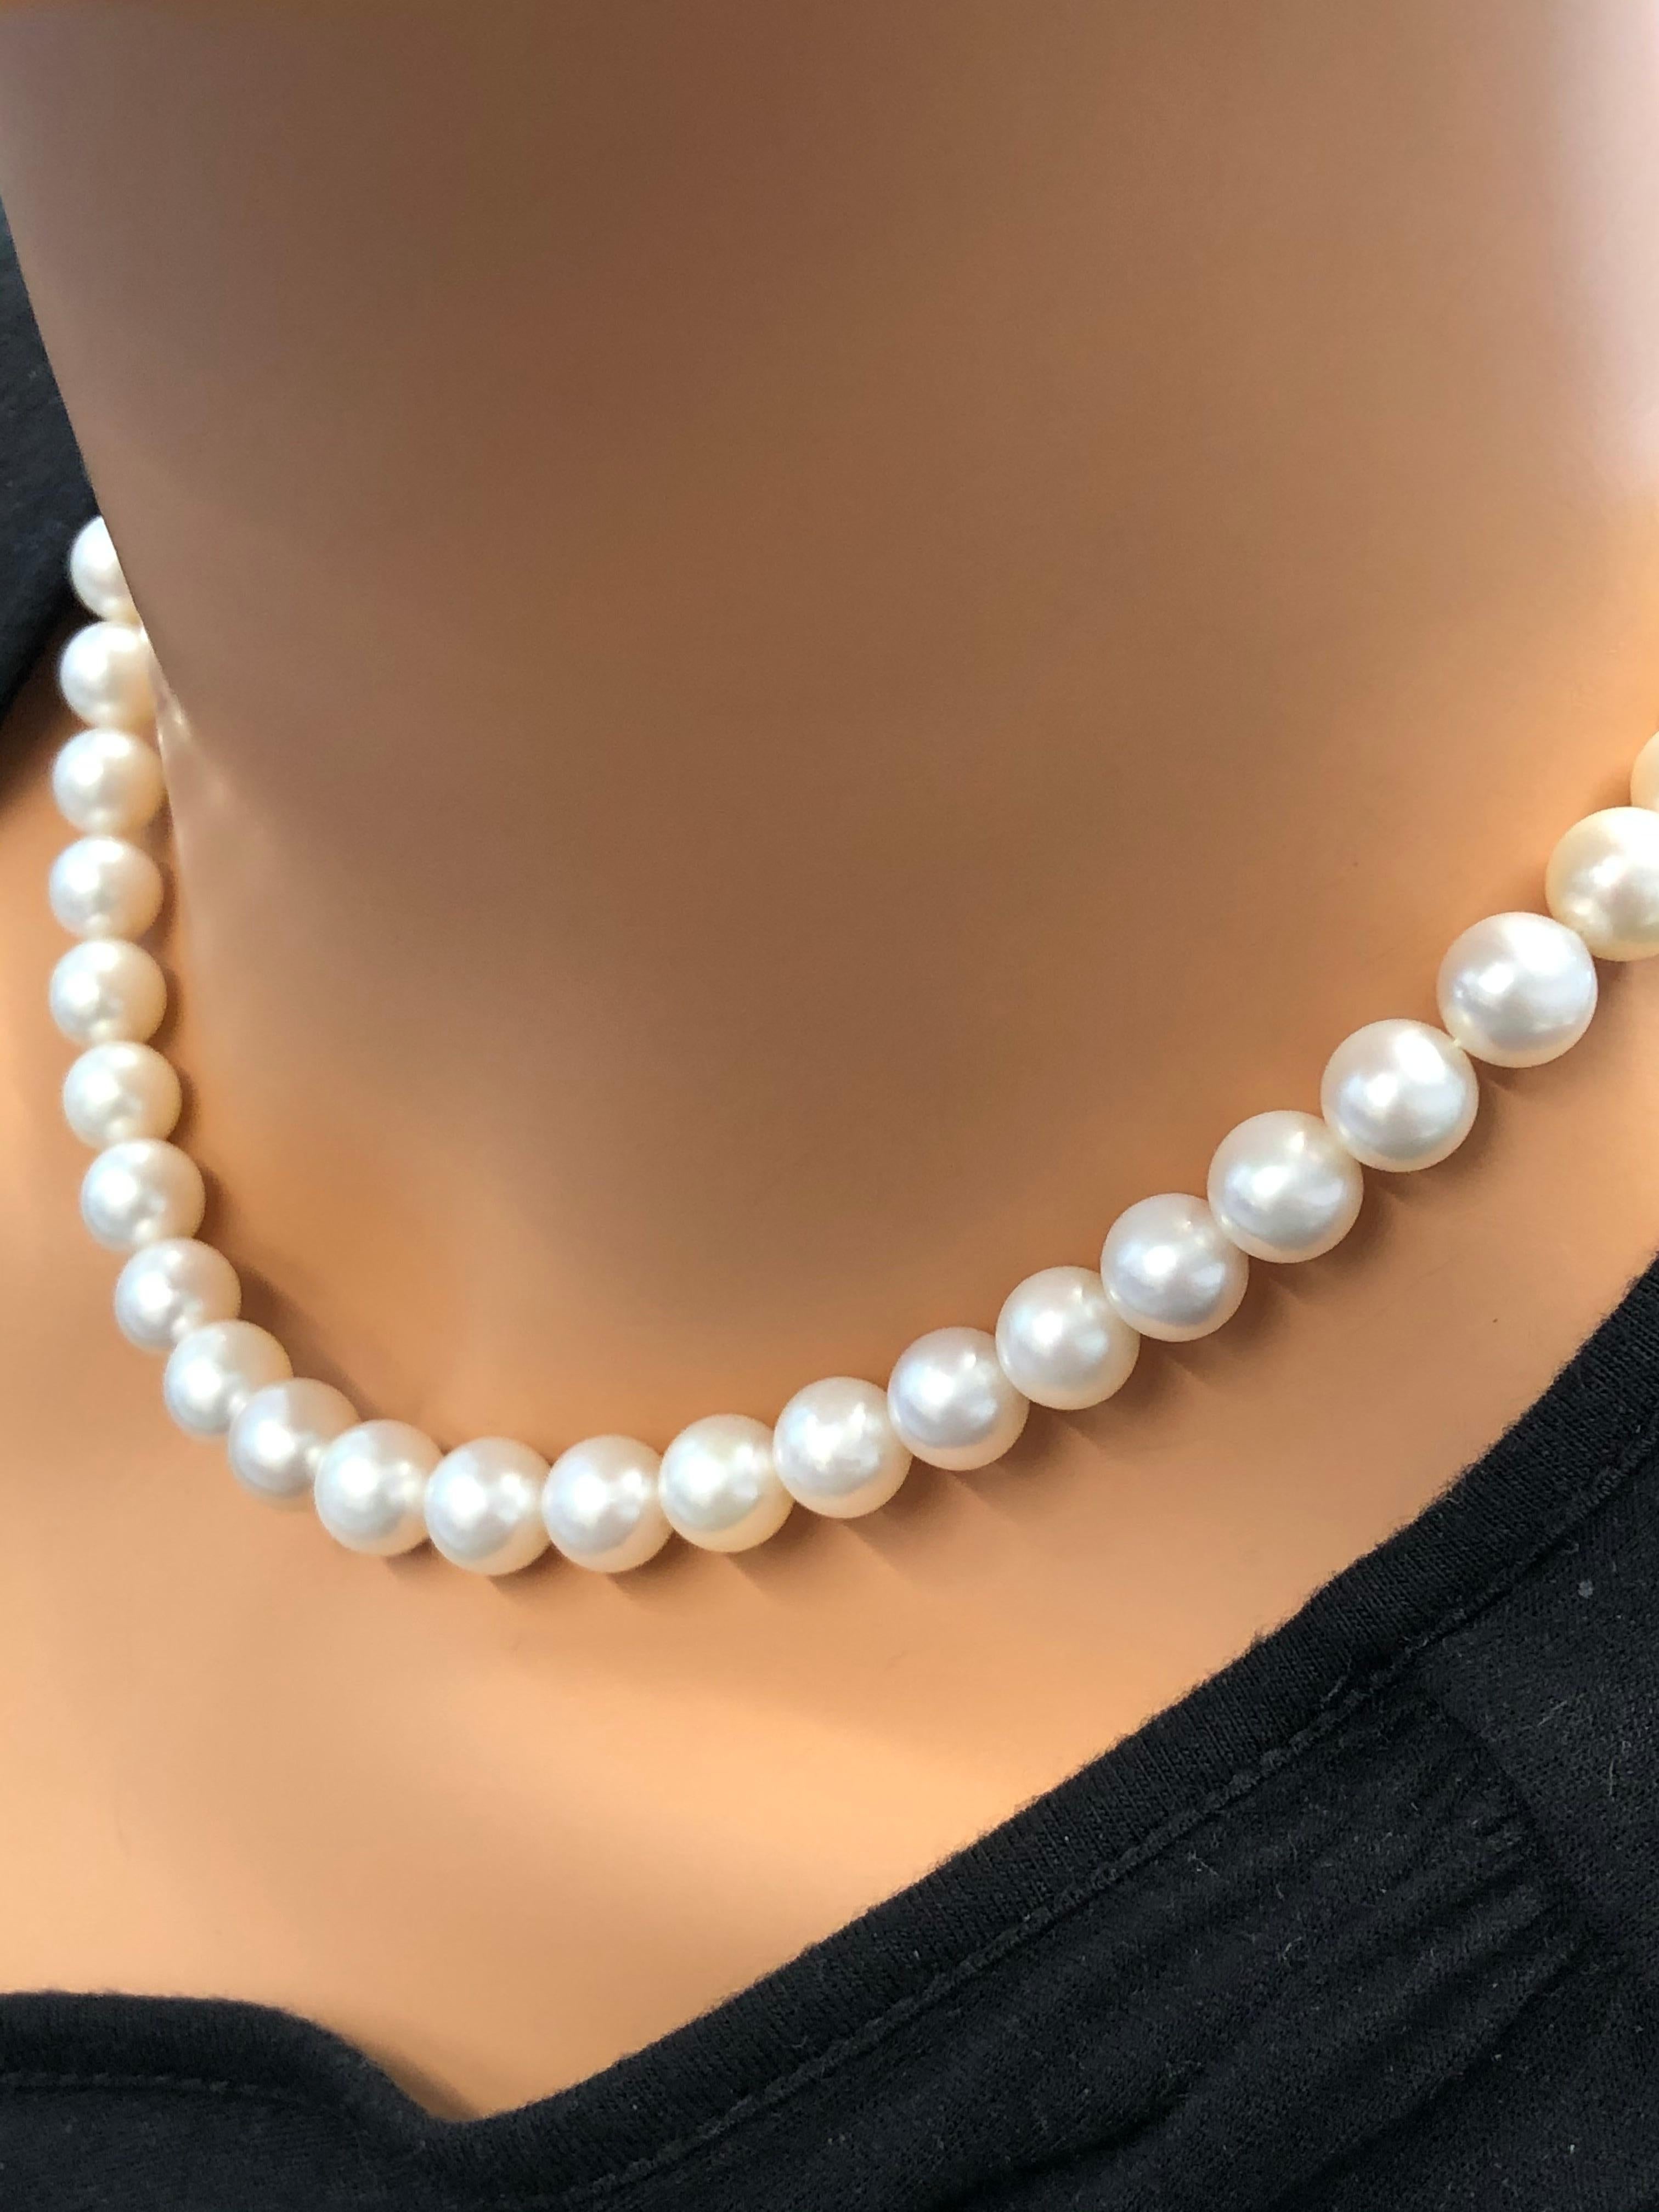 Dieses klassische Perlencollier ist mit seiner nahtlosen Eleganz das ultimative Statement in Sachen Luxus. Insgesamt 45 weiße Südsee-Zuchtperlen sind fachmännisch auf einem einzigen Strang aufgereiht und farblich gleichmäßig aufeinander abgestimmt.